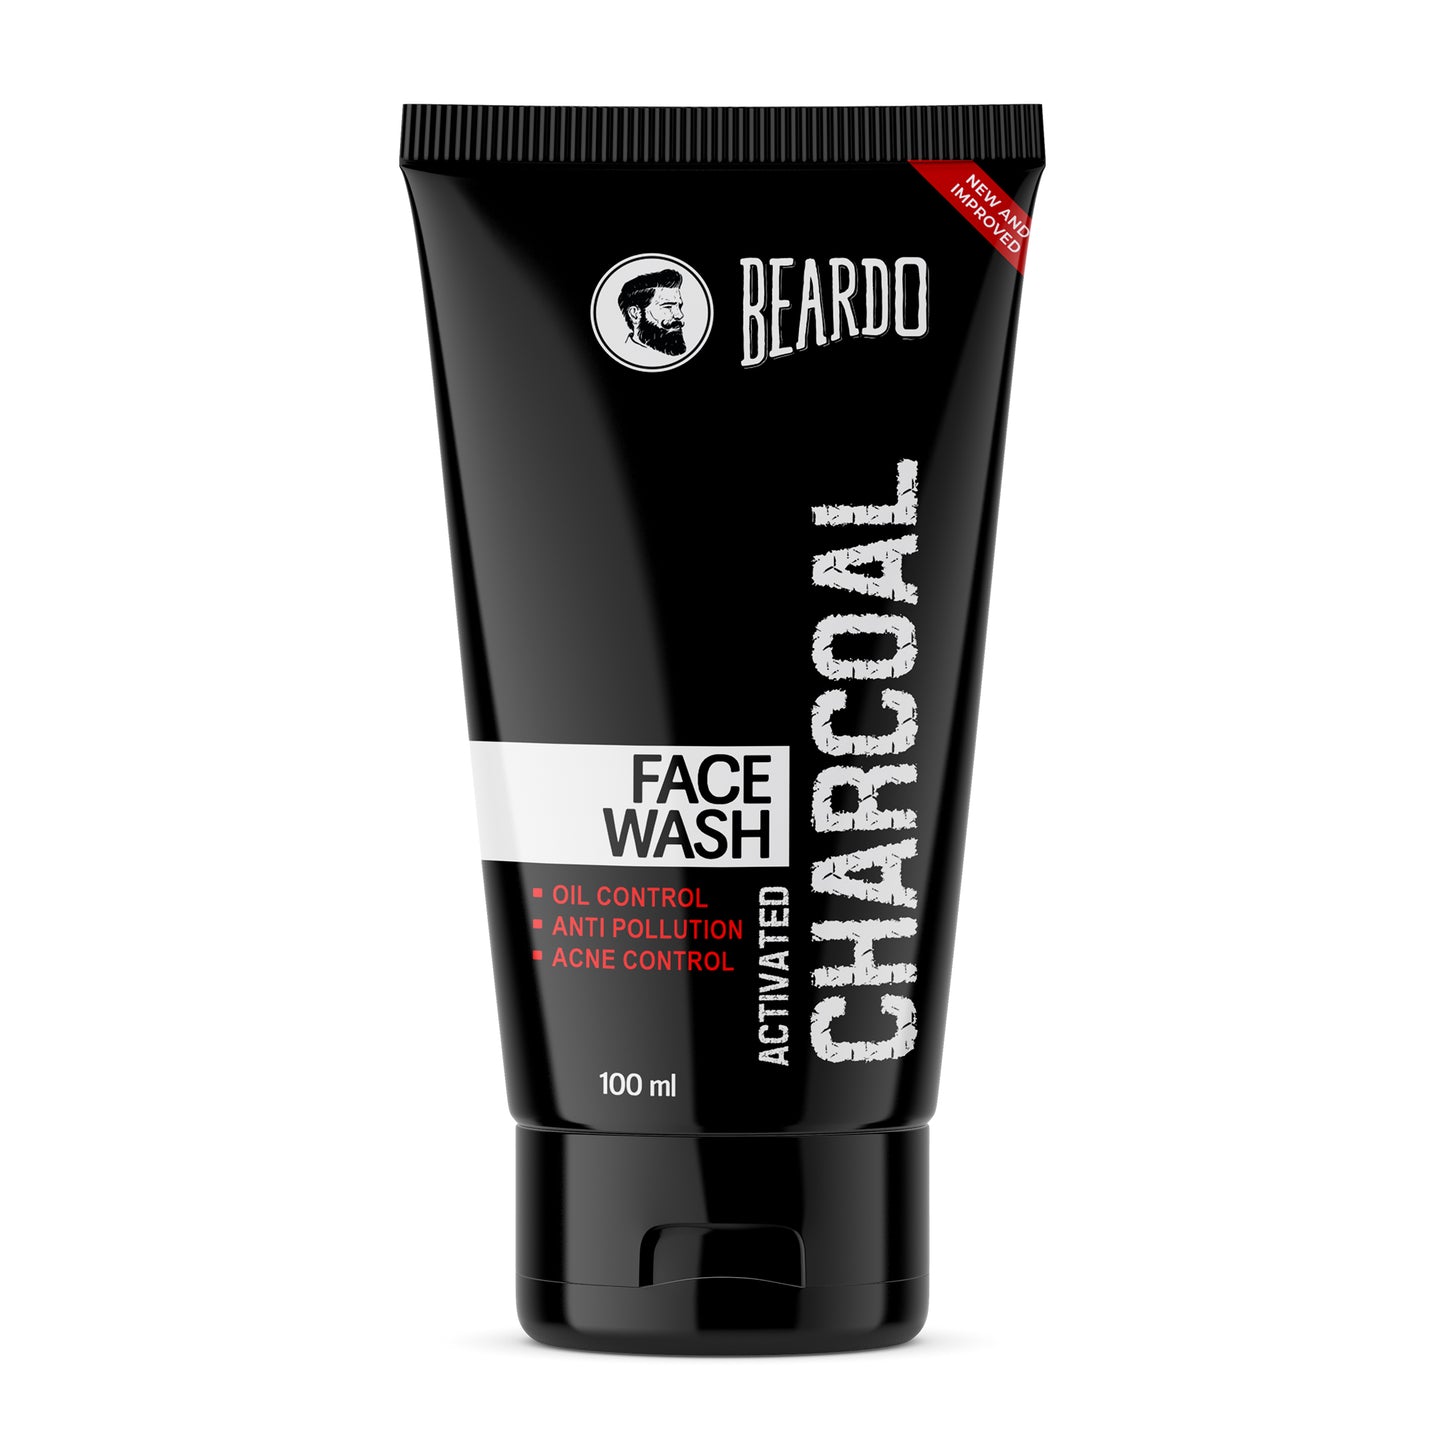 beardo charcoal face wash review beardo skin care kit, best charcoal face wash, charcoal face wash price